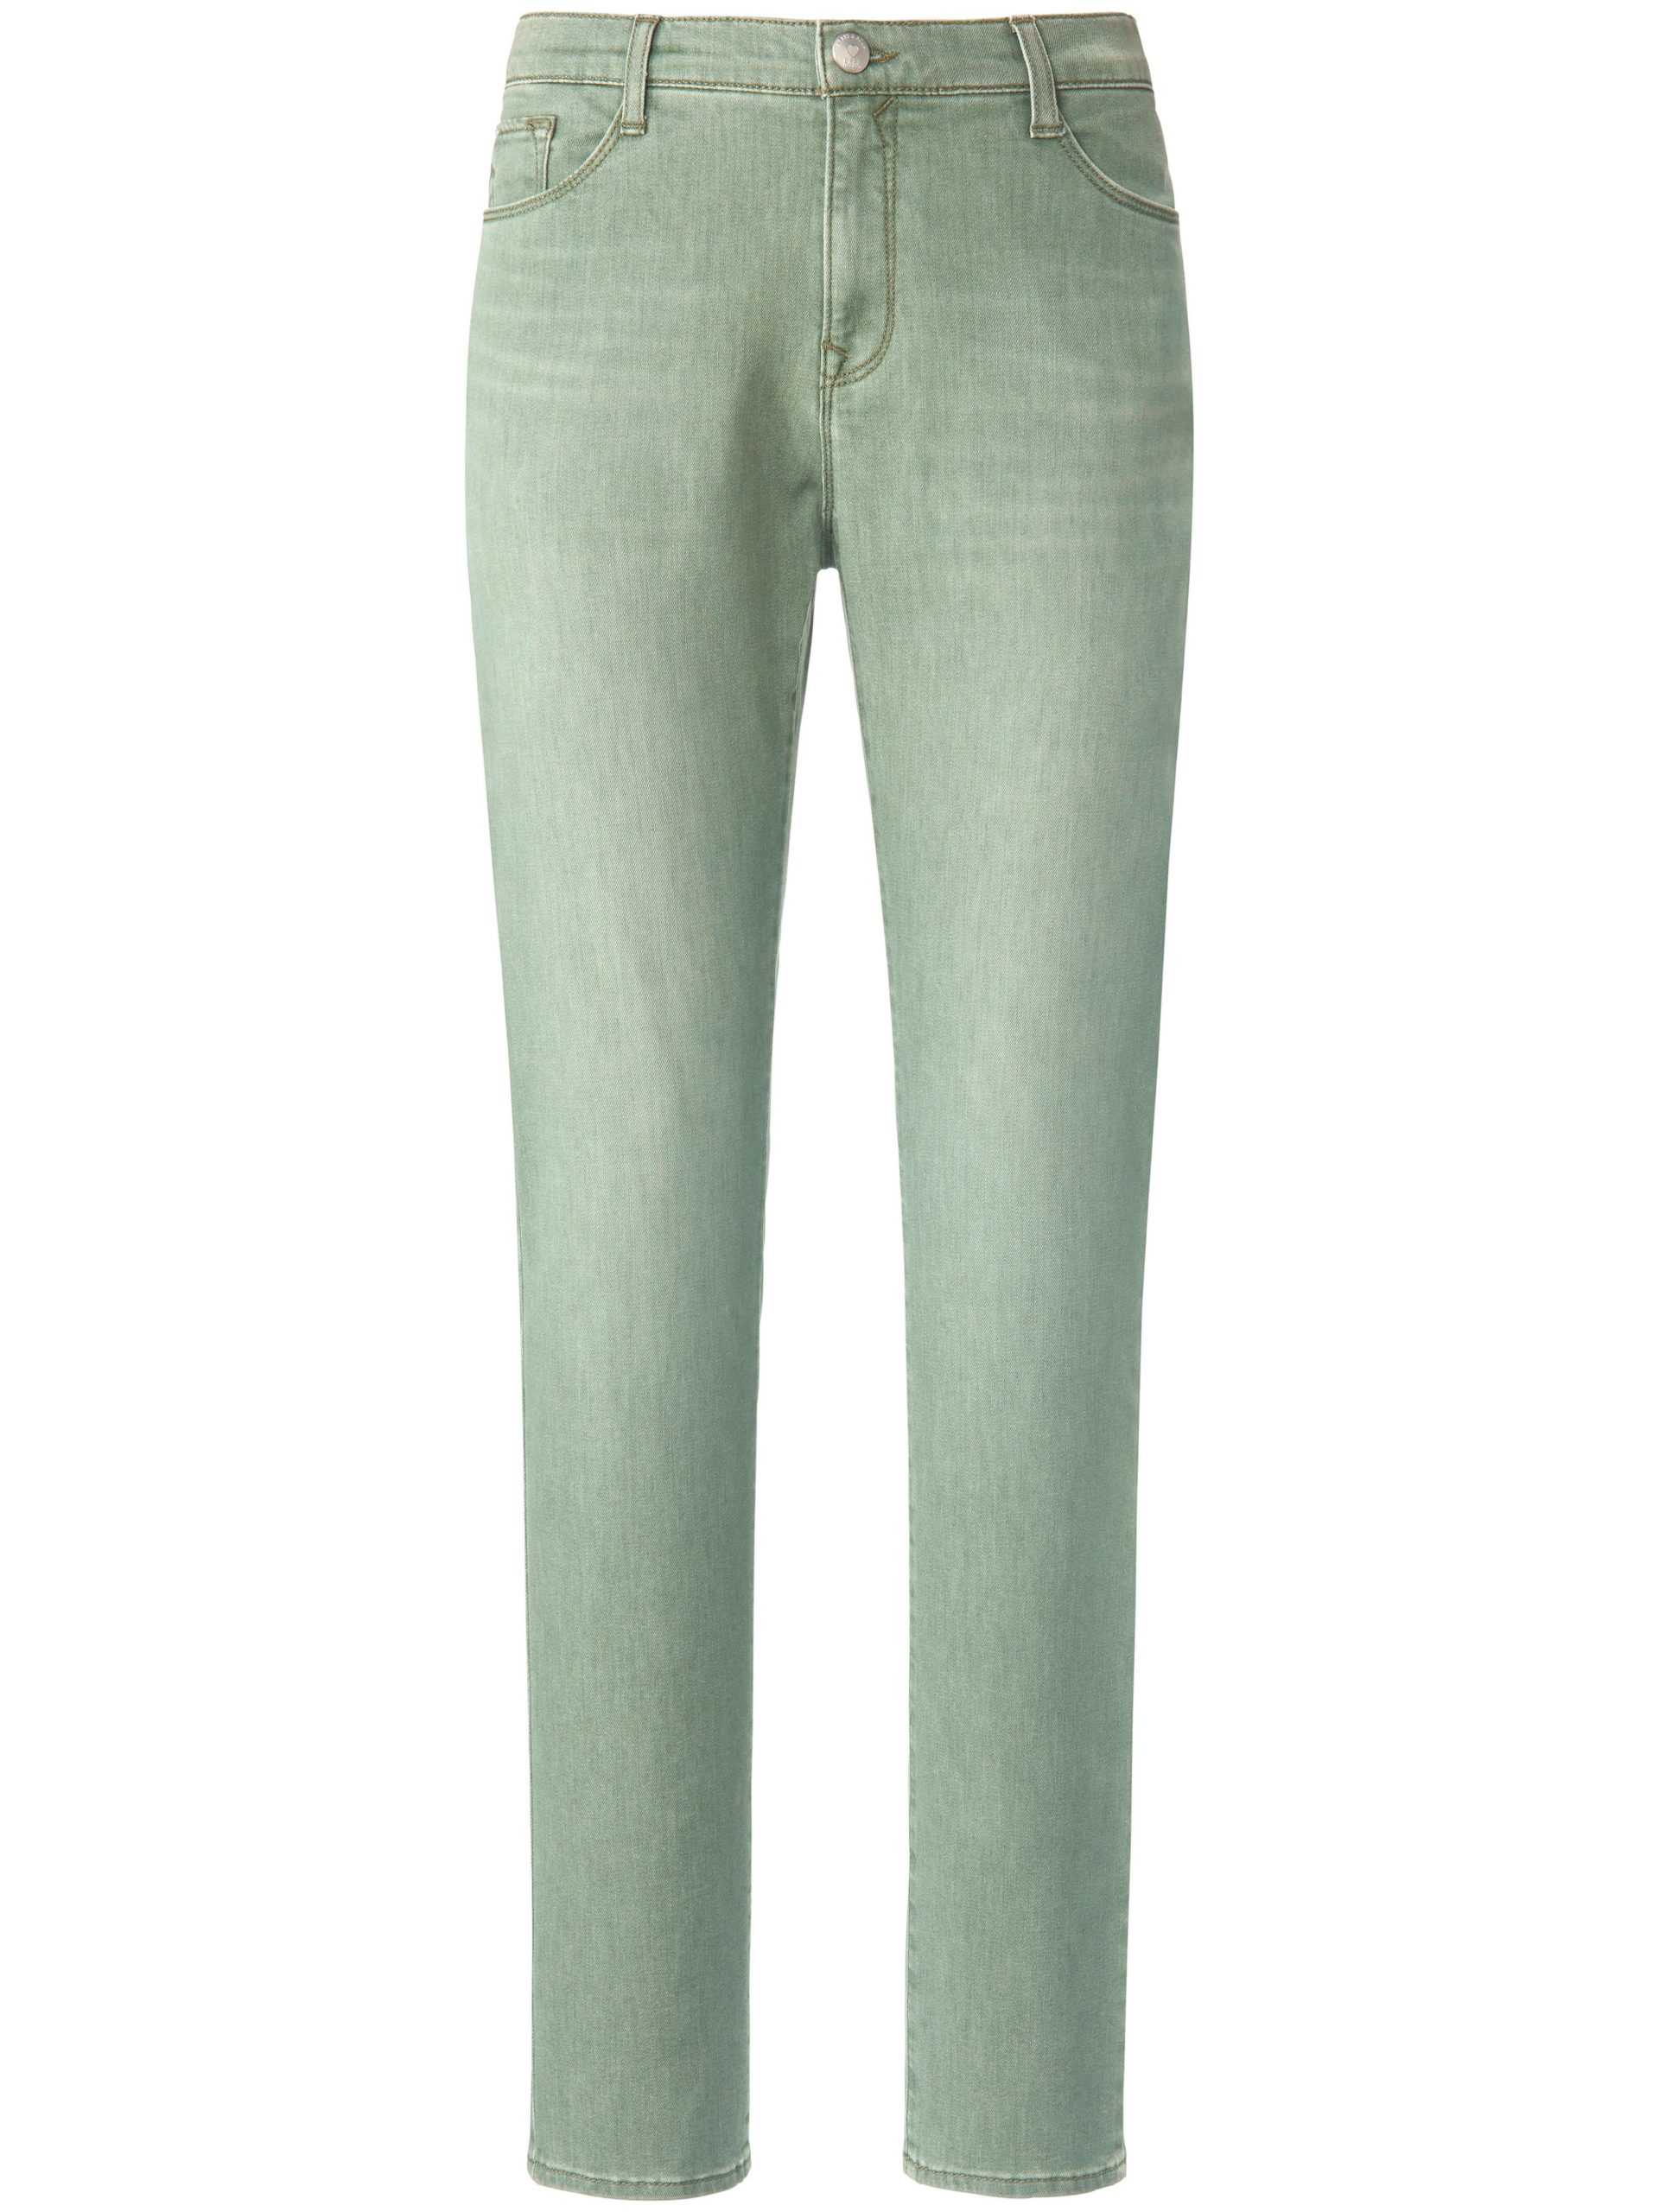 Feminine Fit-jeans model Nicola Van Brax Feel Good groen Kopen